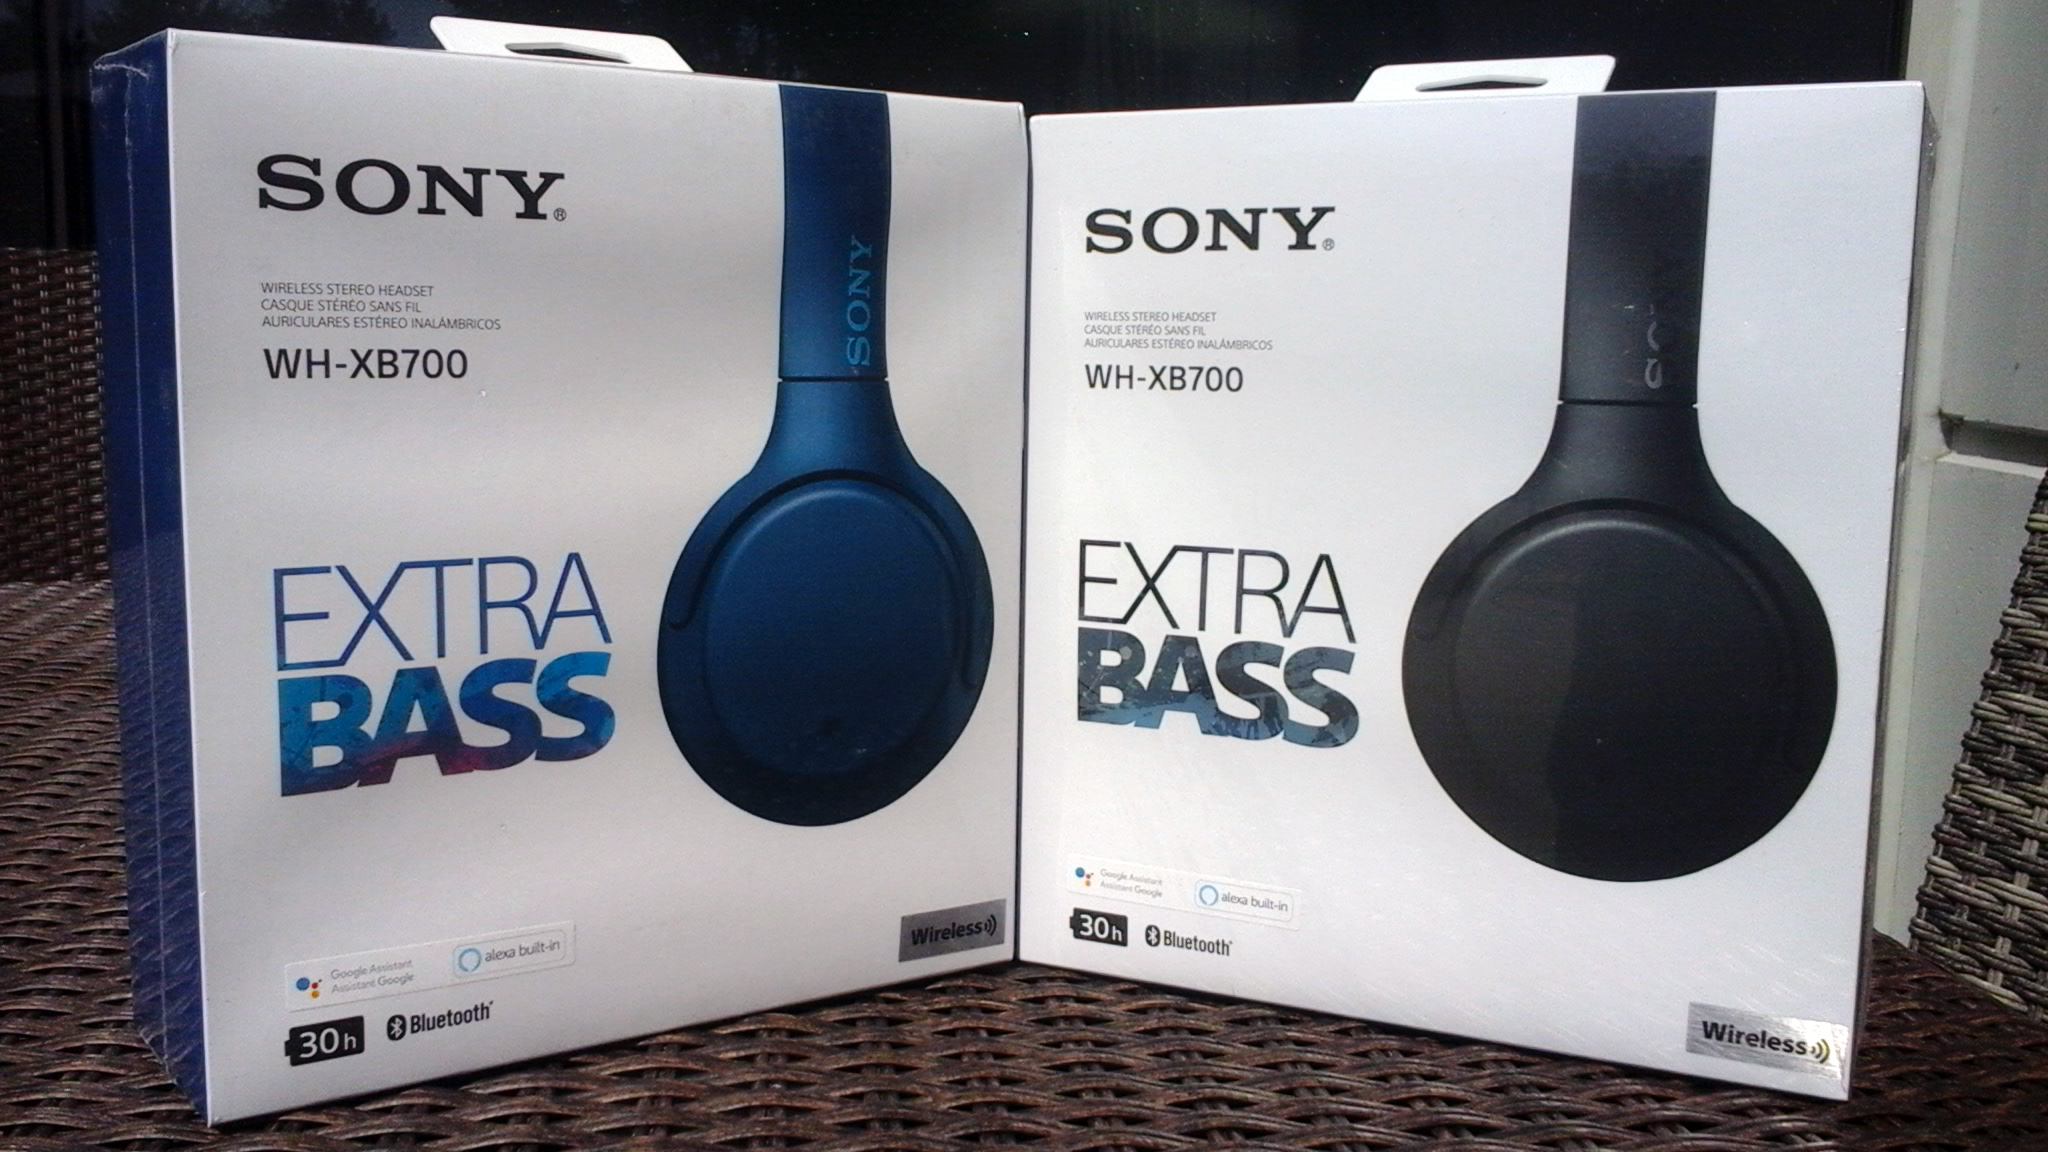 Les deux boîtes blanches contenant les écouteurs WH-XB700 de Sony. Chaque boîte porte le nom « SONY WH-XB700 EXTRA BASS ». Les boîtes sont dehors à la lumière du soleil. La boîte de gauche contient une paire d’écouteurs en bleu, tandis que la boîte de droite contient une paire d’écouteurs en noir.